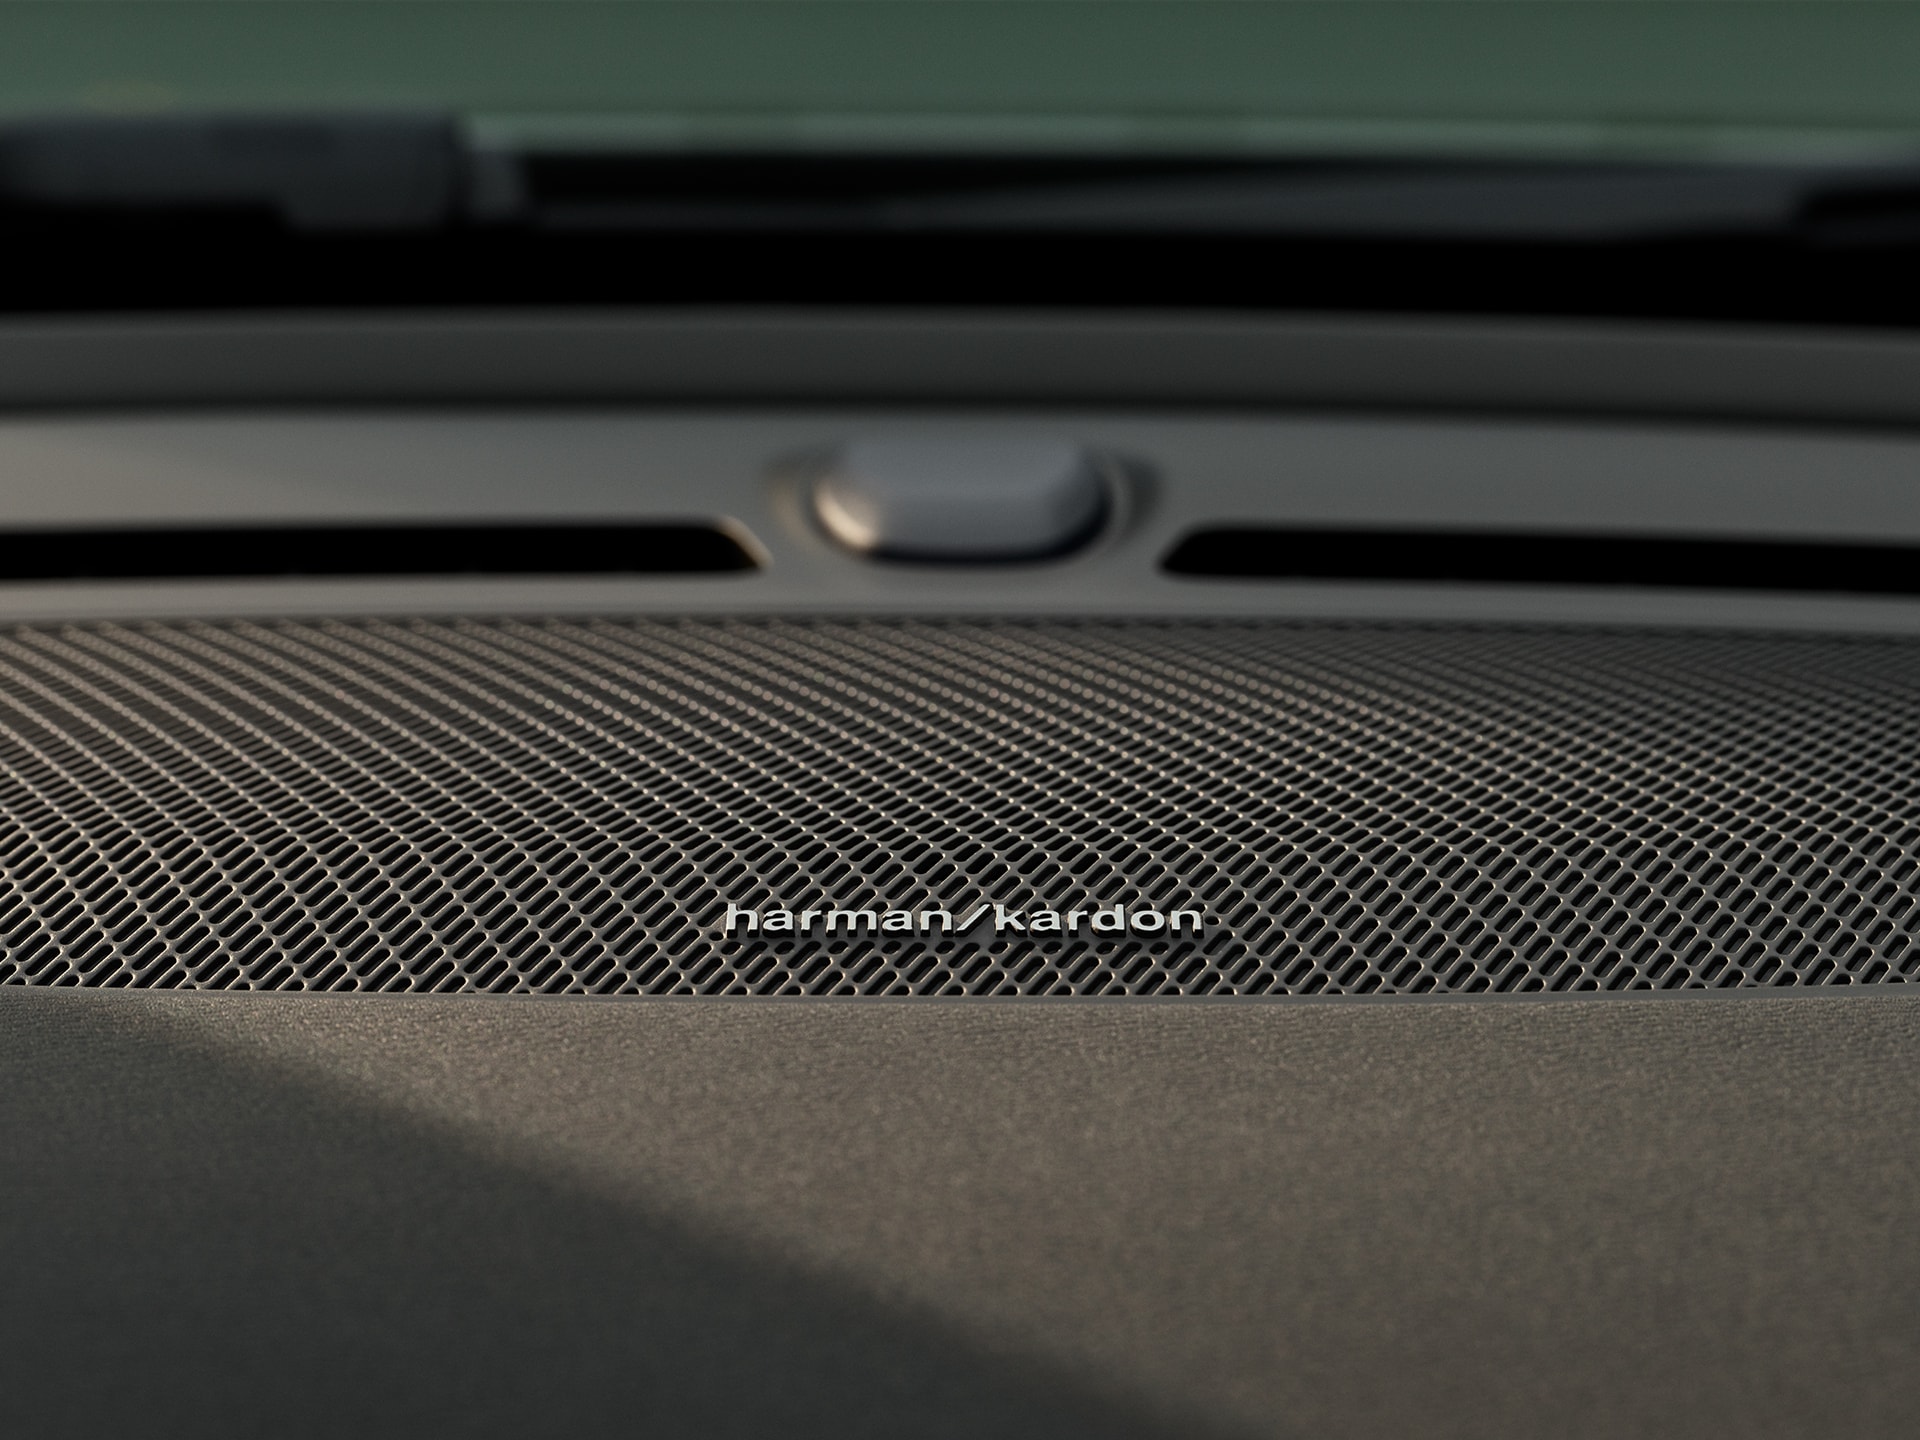 Detaljbilde av Harman Kardon-høyttaler i en Volvo XC40 Recharge-dør